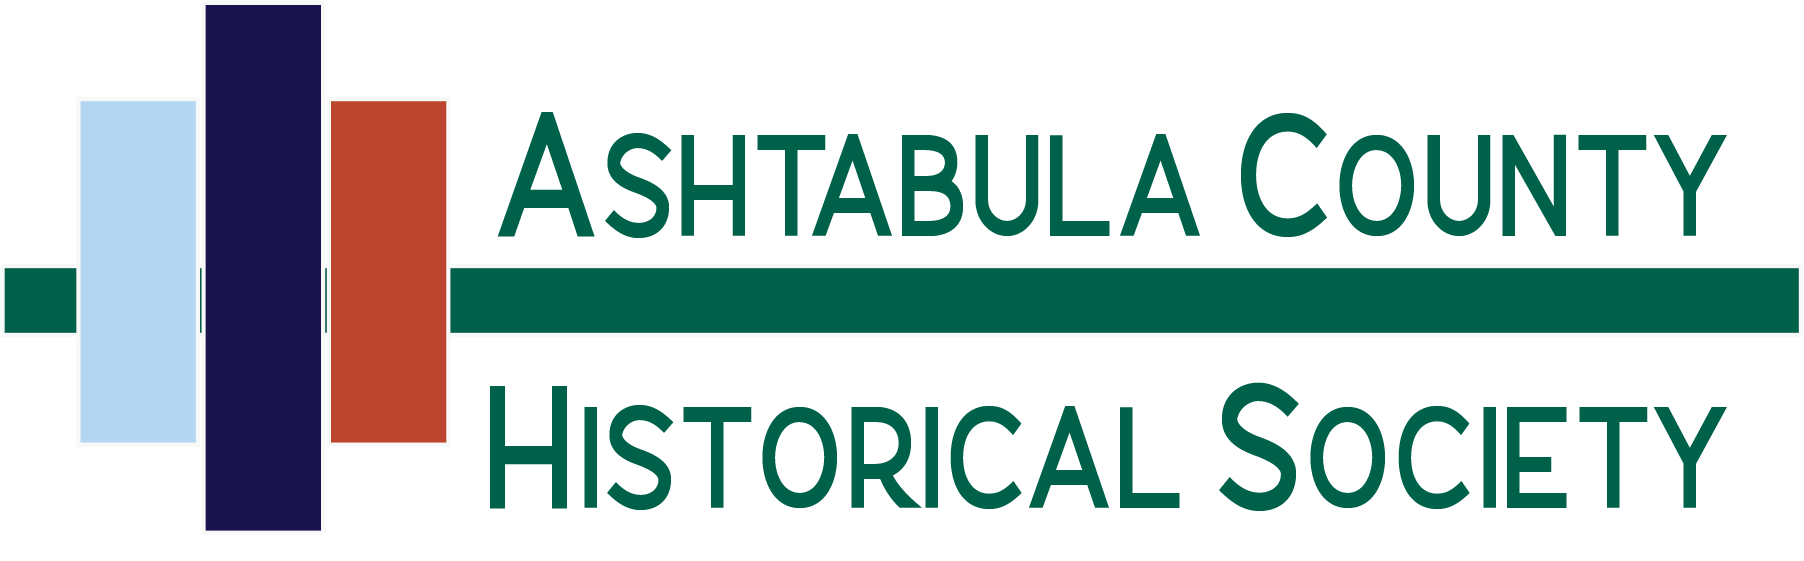 Ashtabula County Historical Society